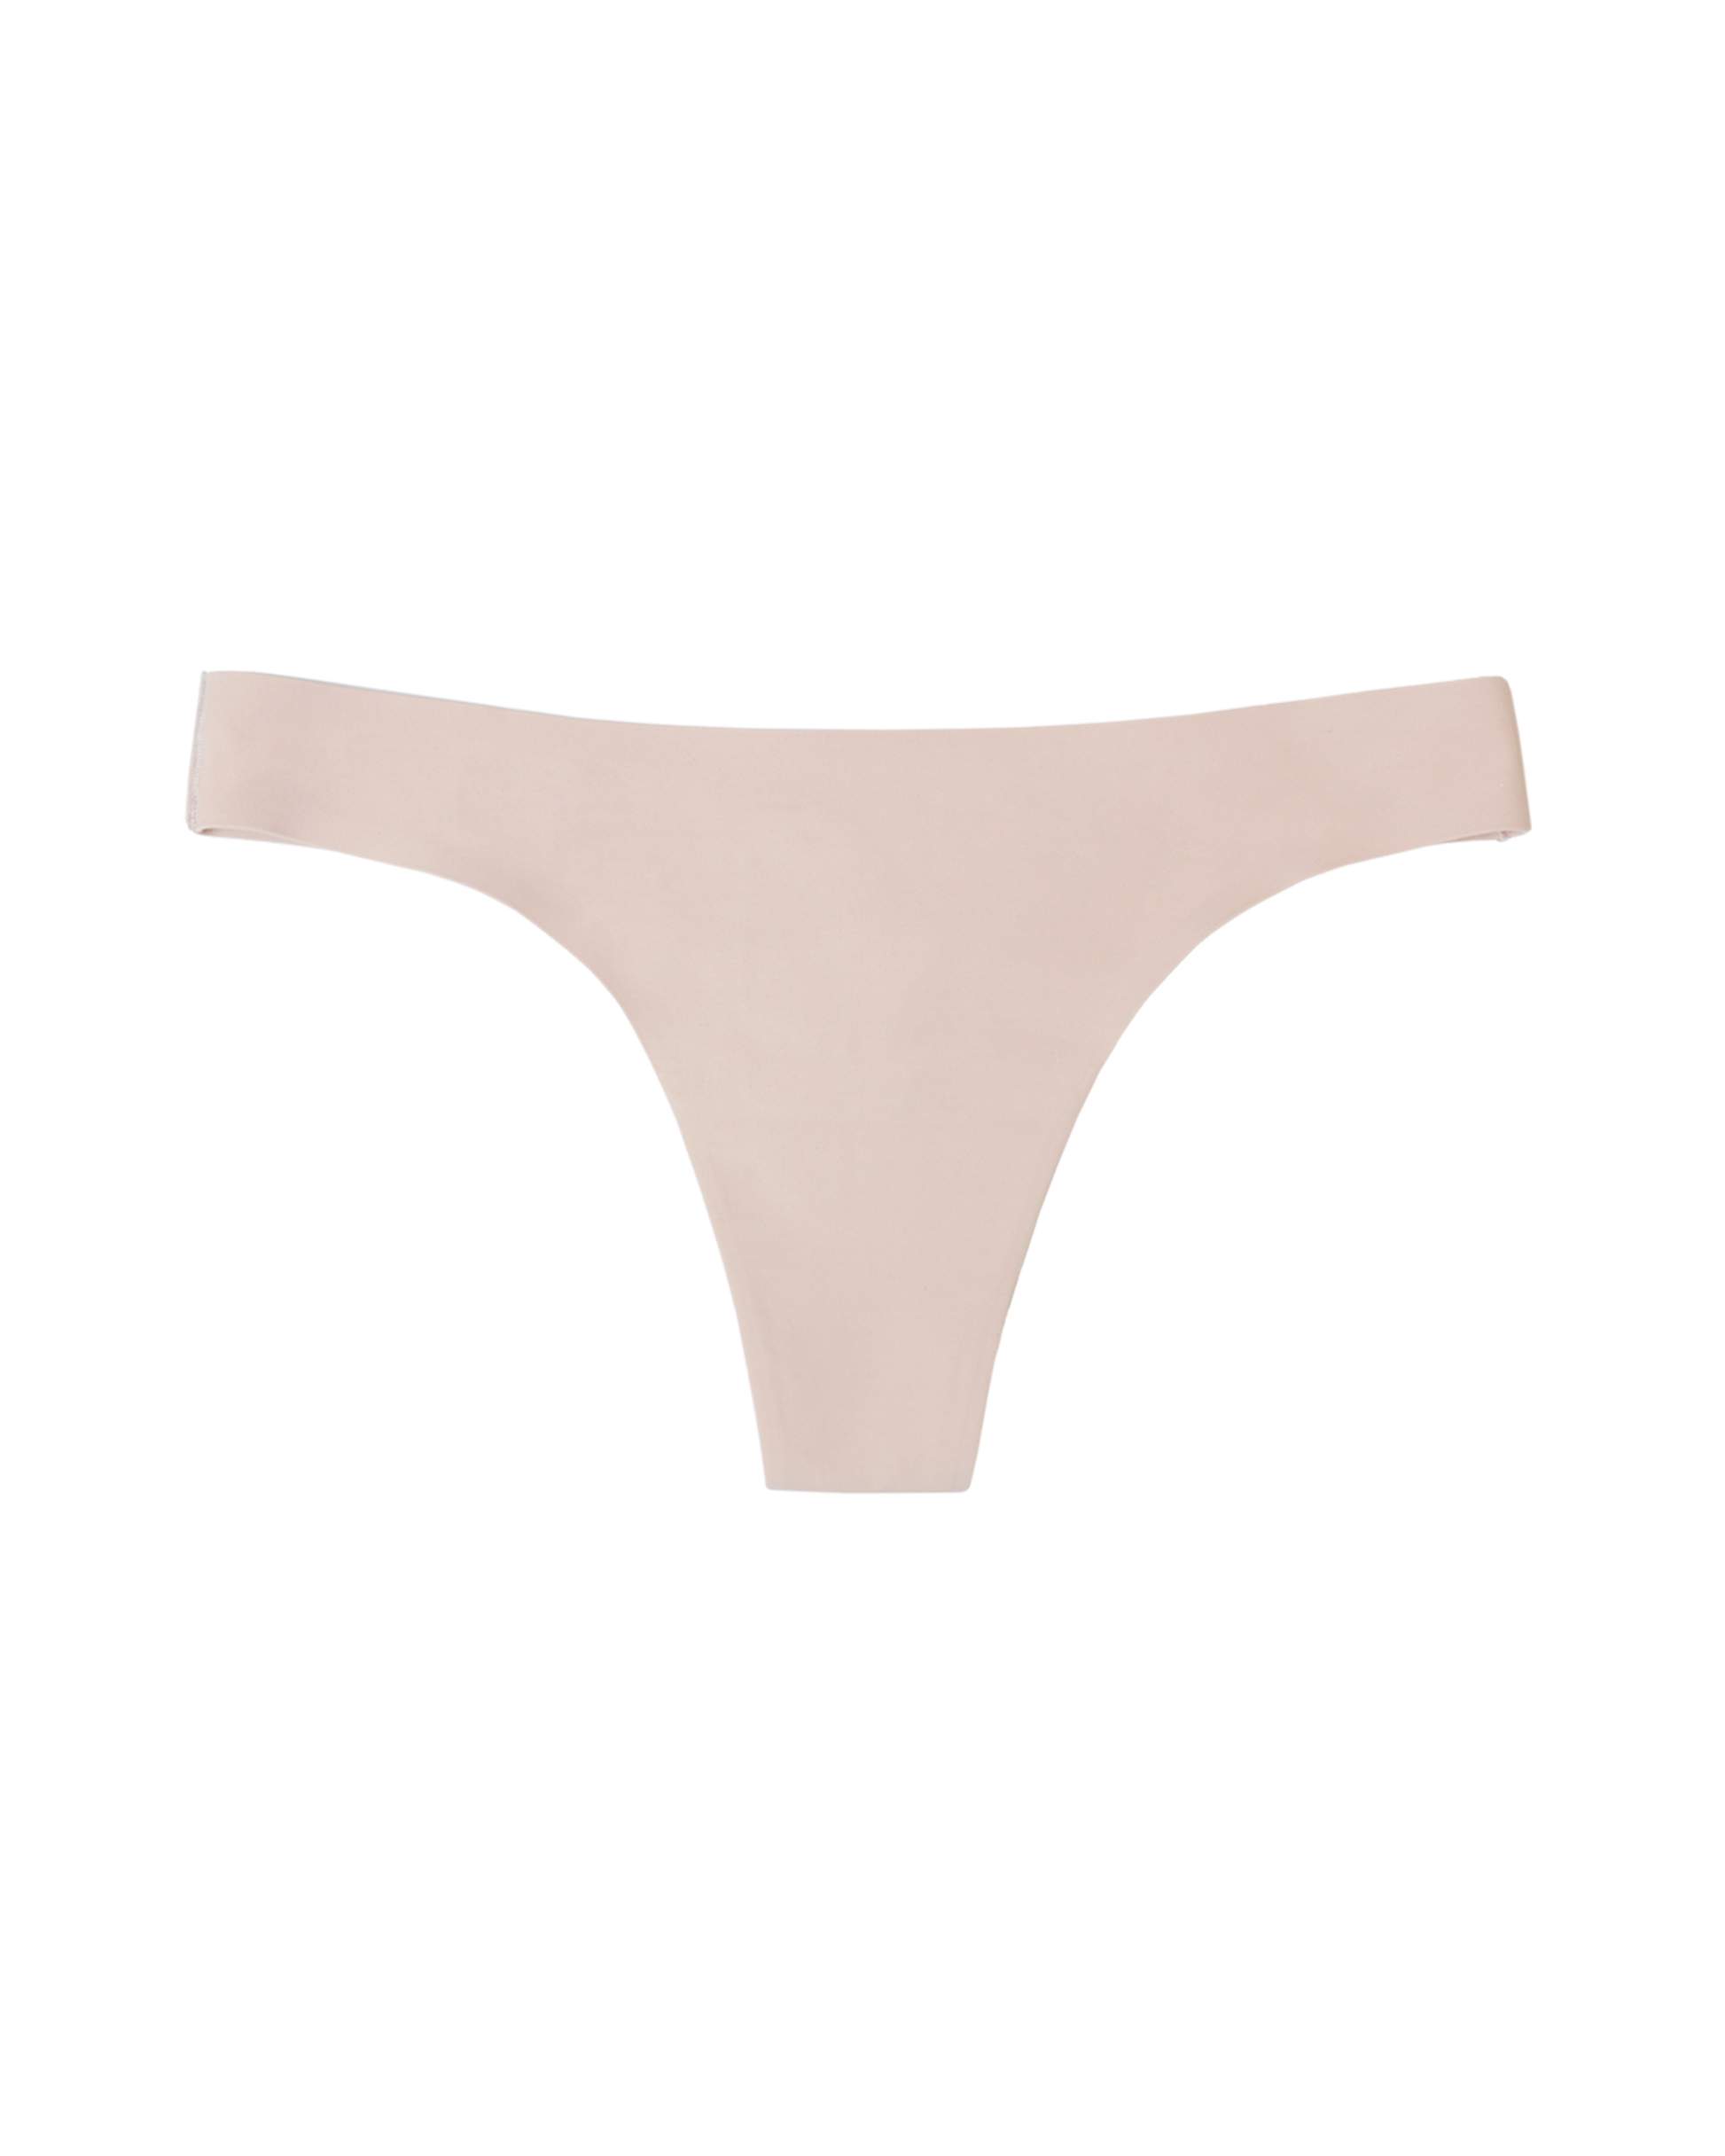 Period Thong Underwear